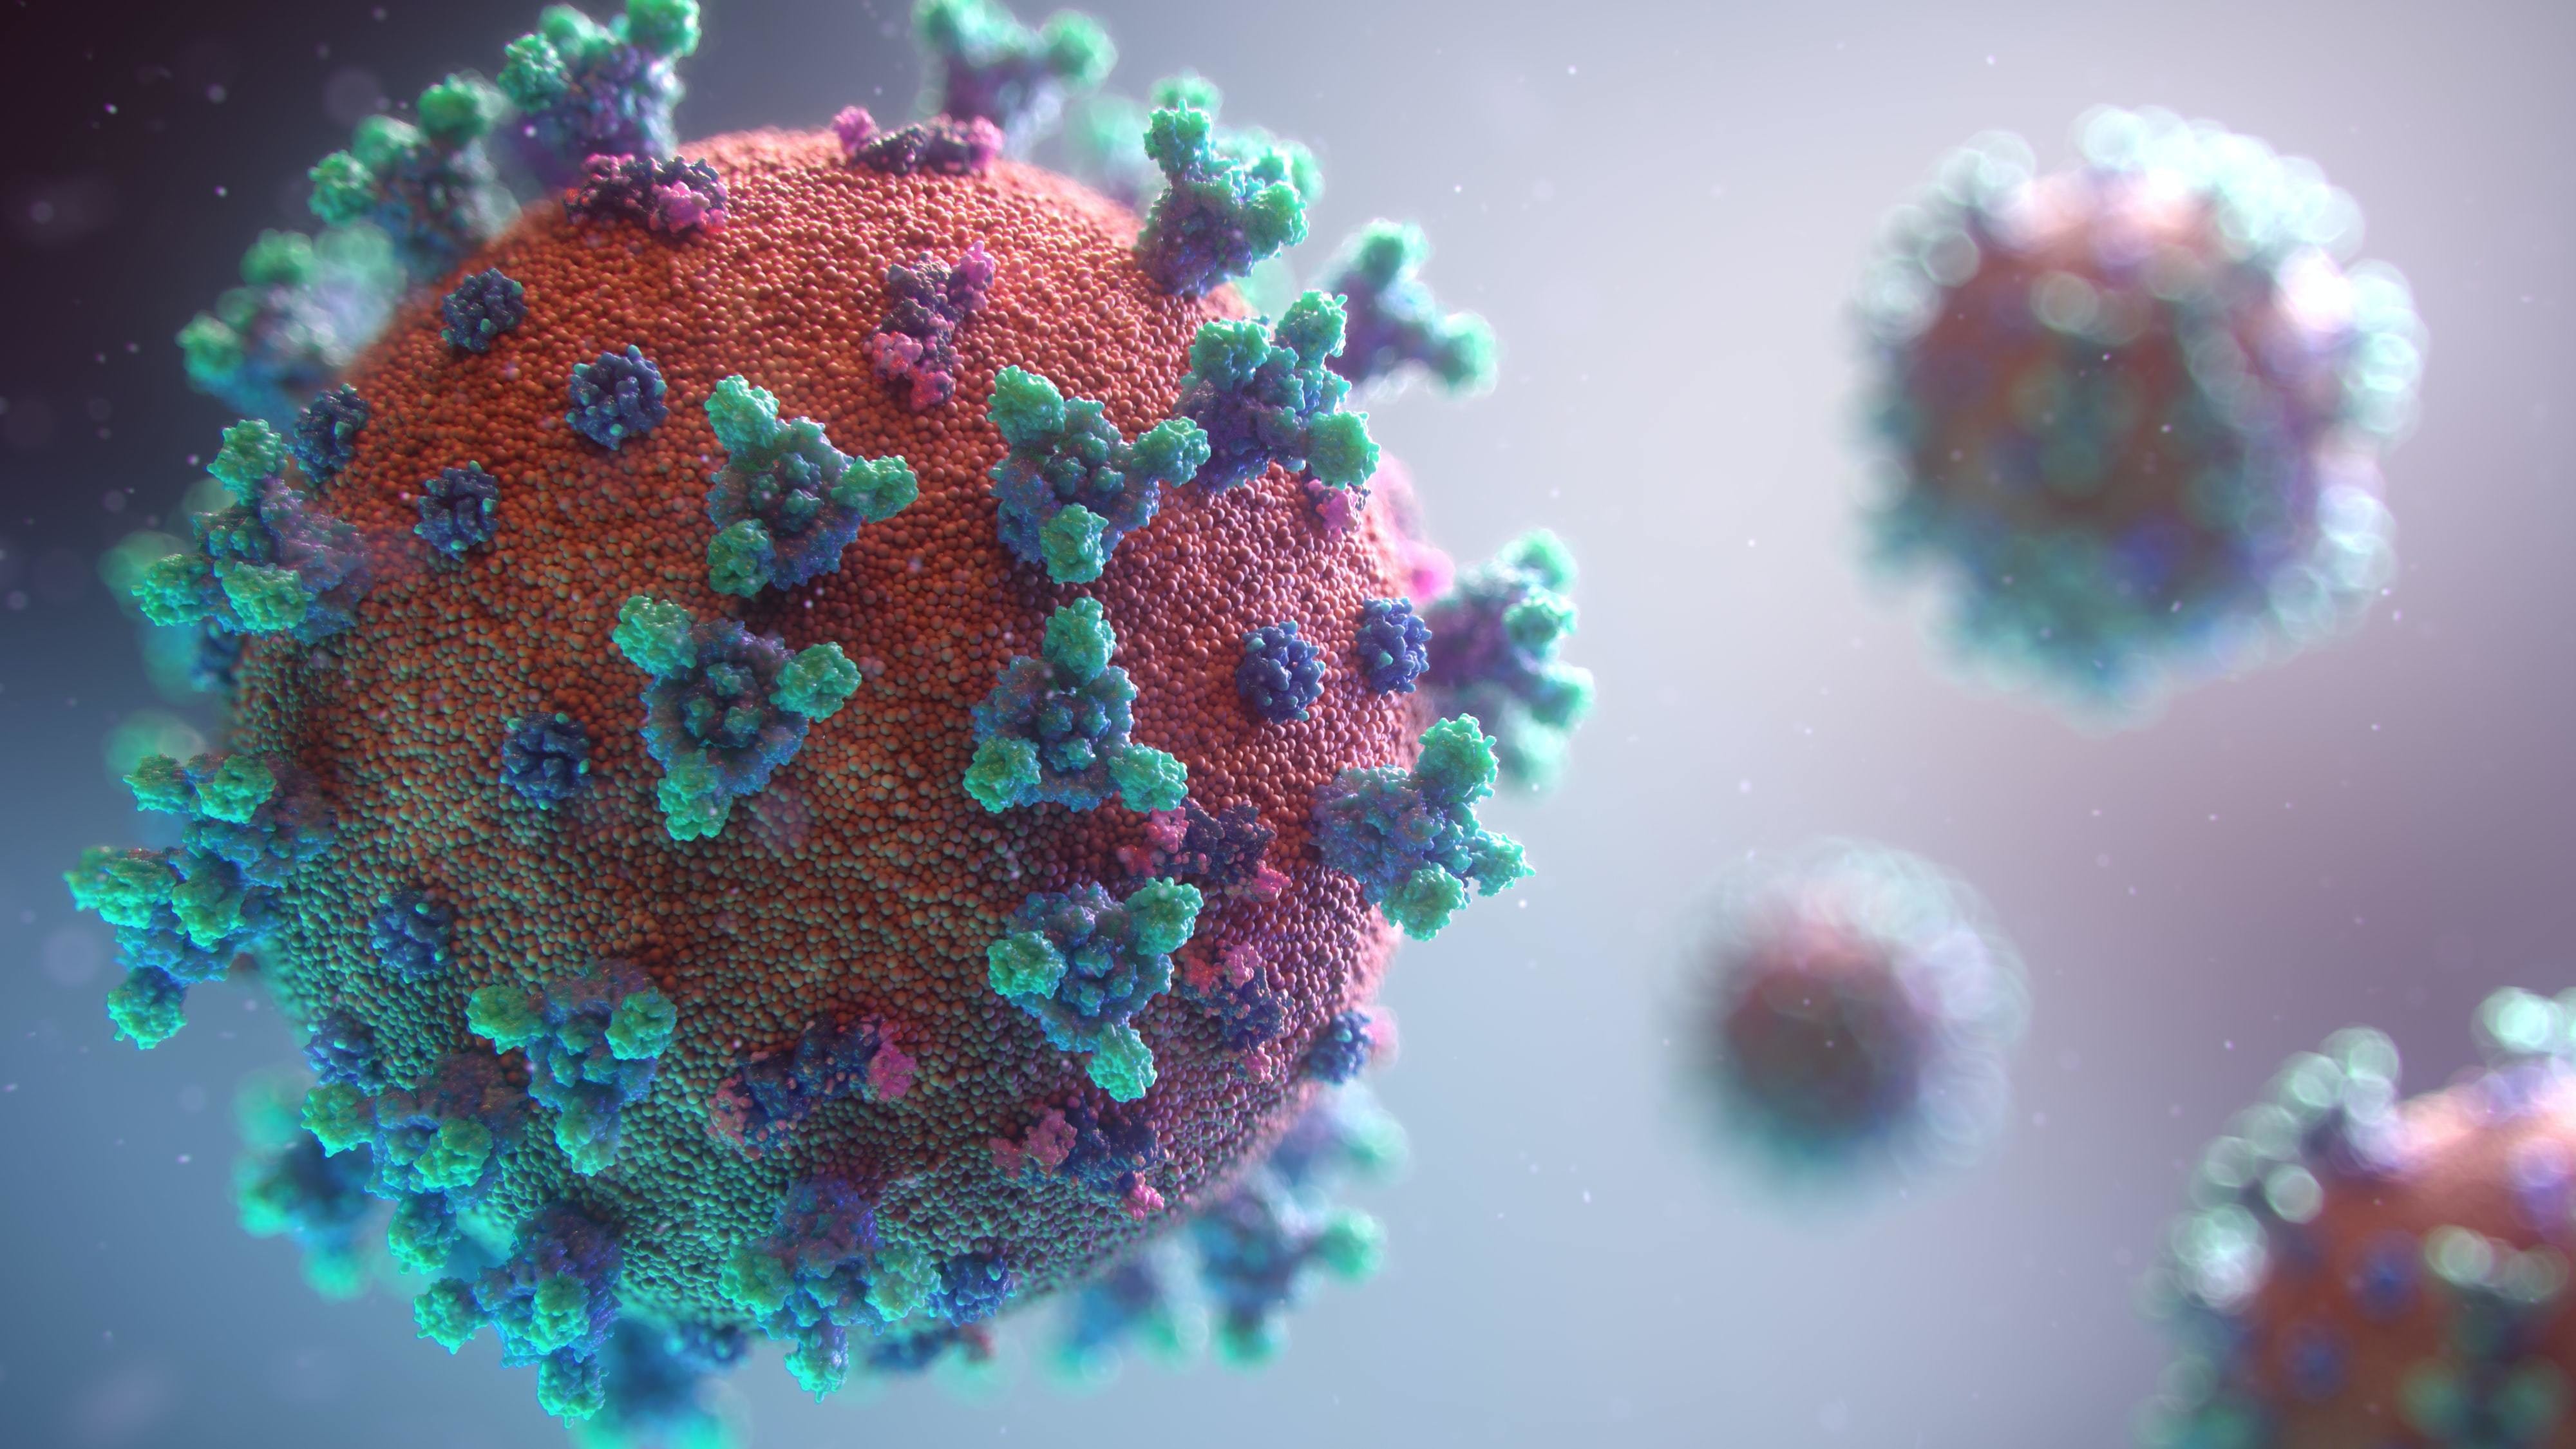 Ученые из ornl разработали молекулу, которая нарушает механизм заражения коронавирусом sars-cov-2